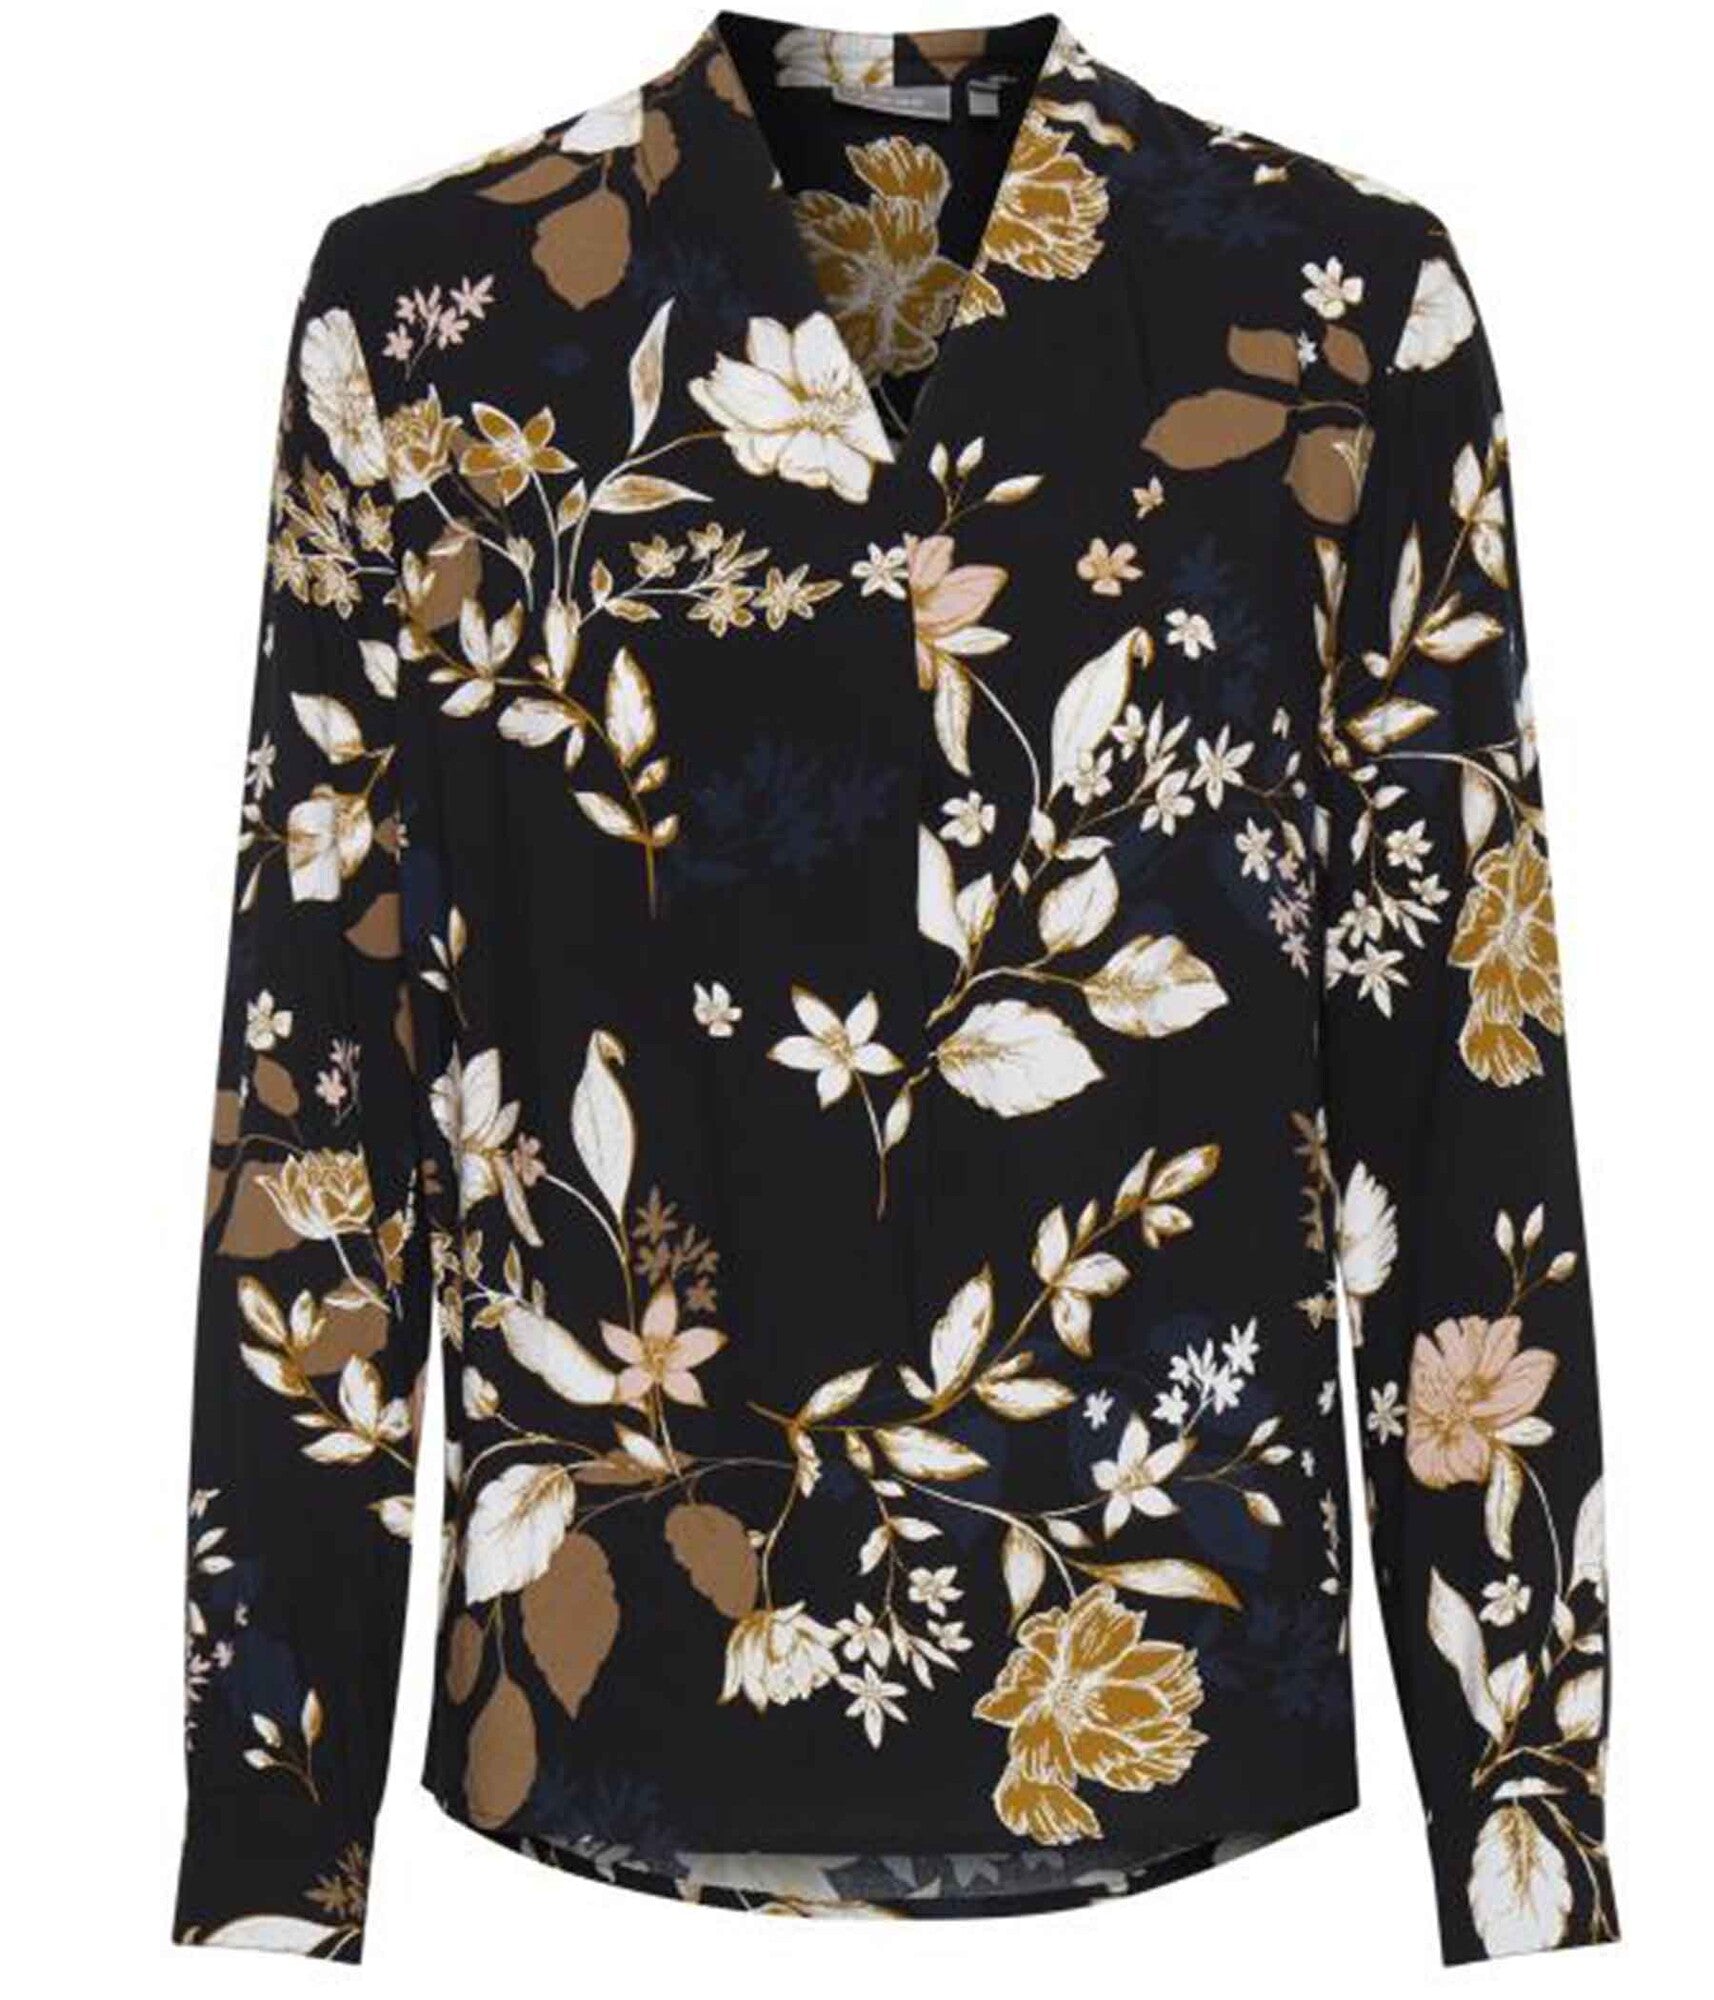 Fransa bluse med blomster print i sort – Heidisbutik